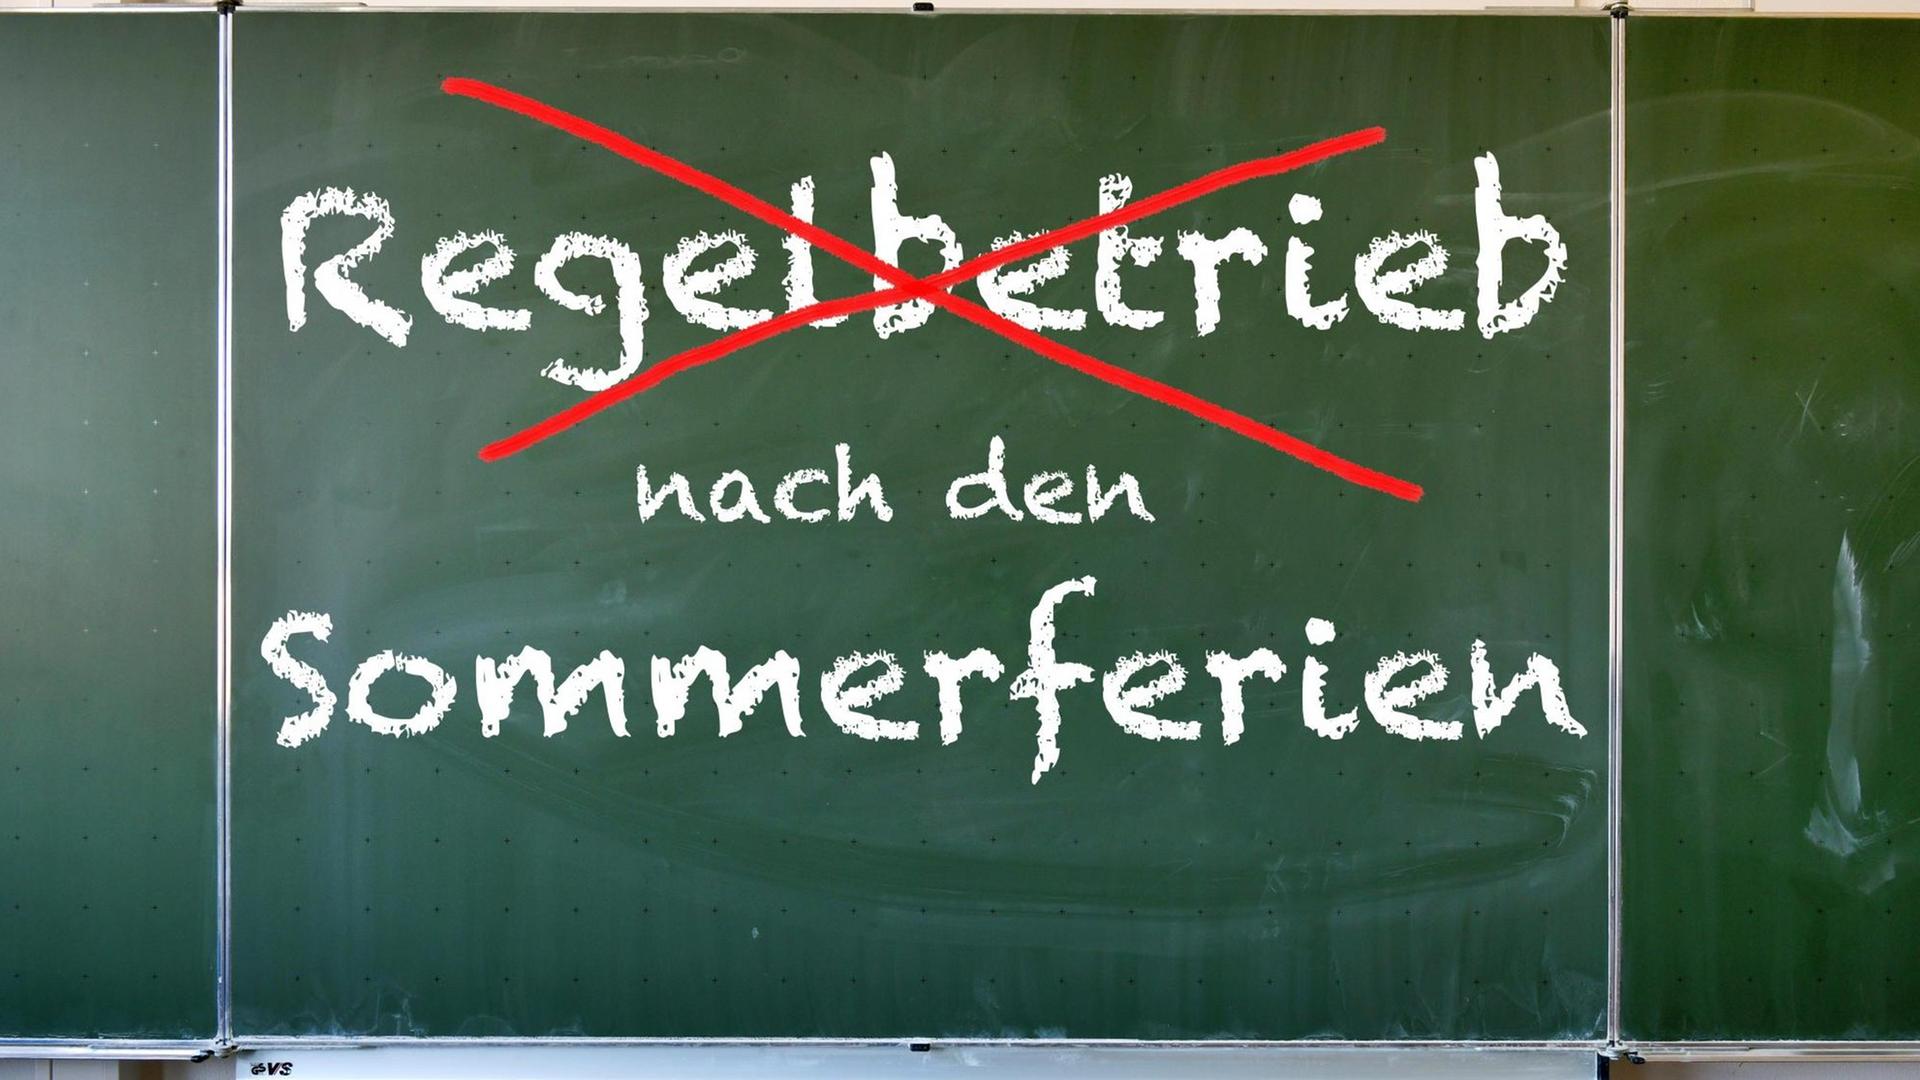 FOTOMONTAGE: Sie zeigt eine Kreideaufschrift auf einer Tafel: "Regelbetrieb nach den Schulferien", das Wort Regelbetrieb ist rot durchgestrichen.